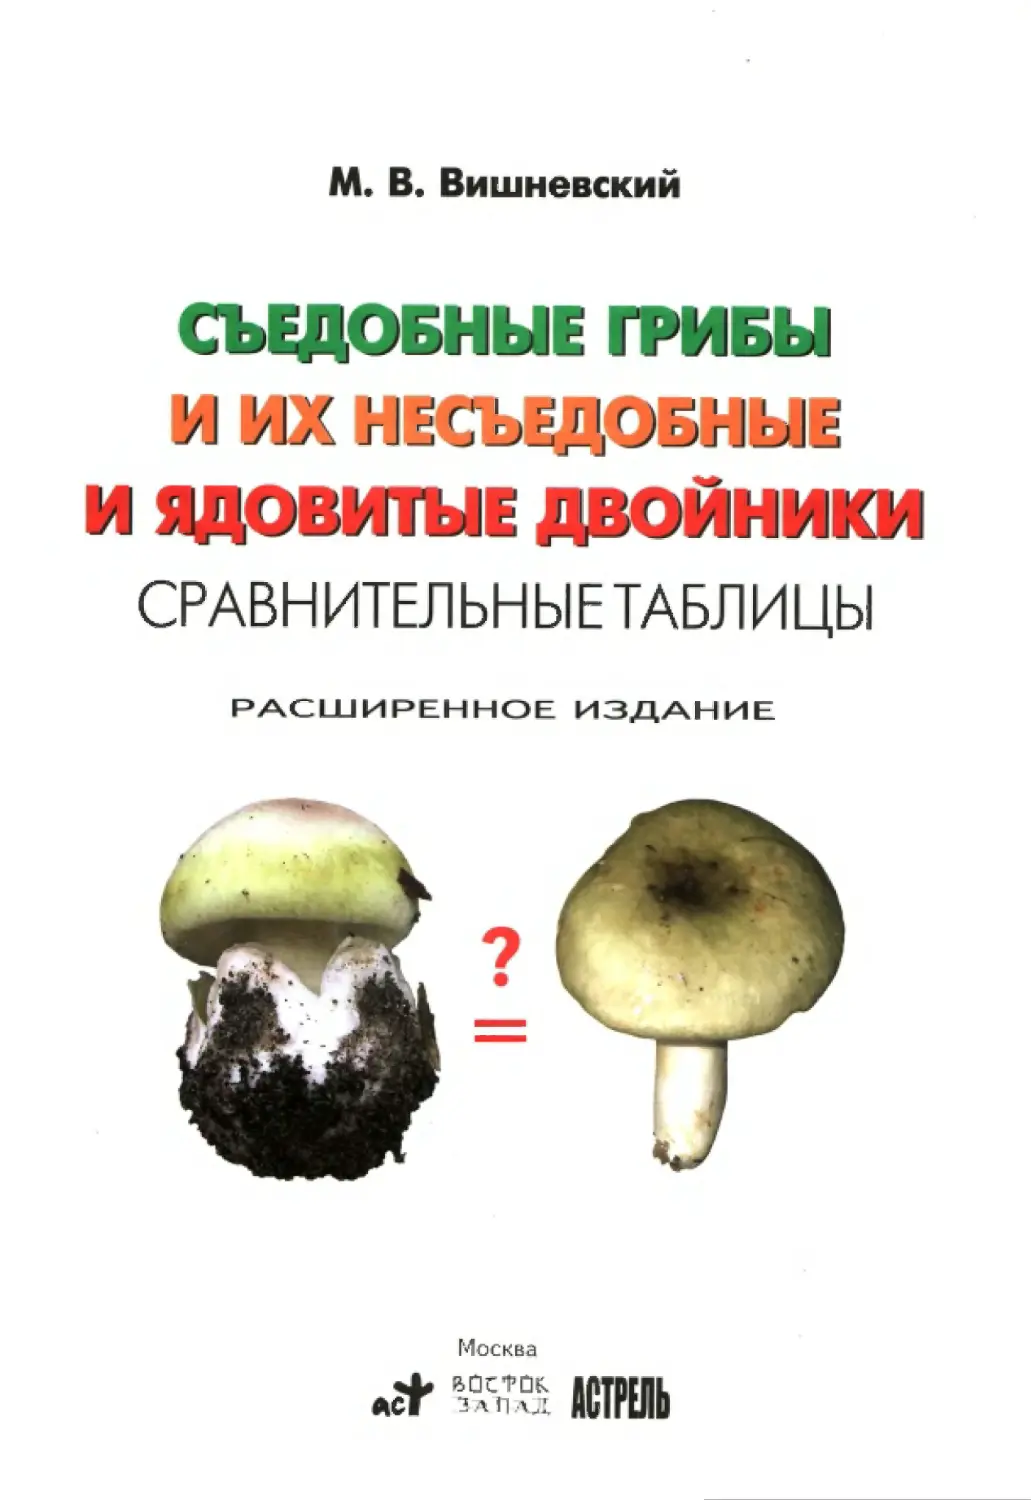 Съедобные грибы и грибы двойники